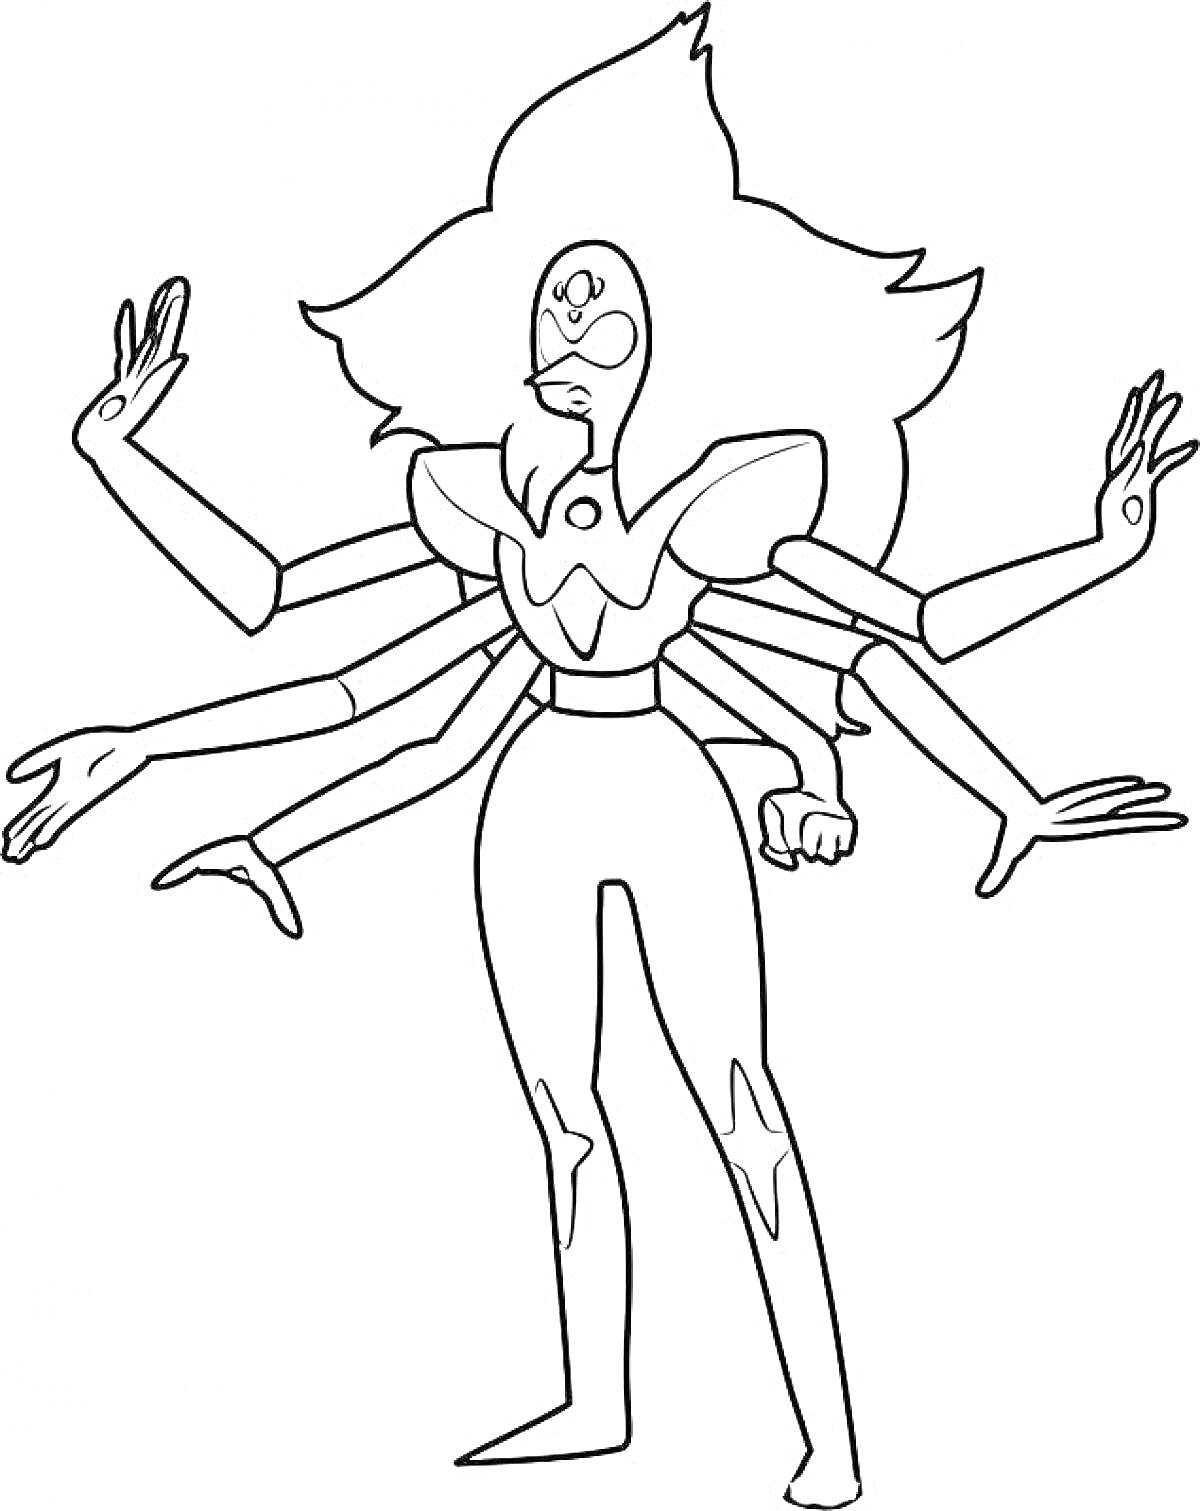 Раскраска Фьюжн с шестью руками из мультфильма 